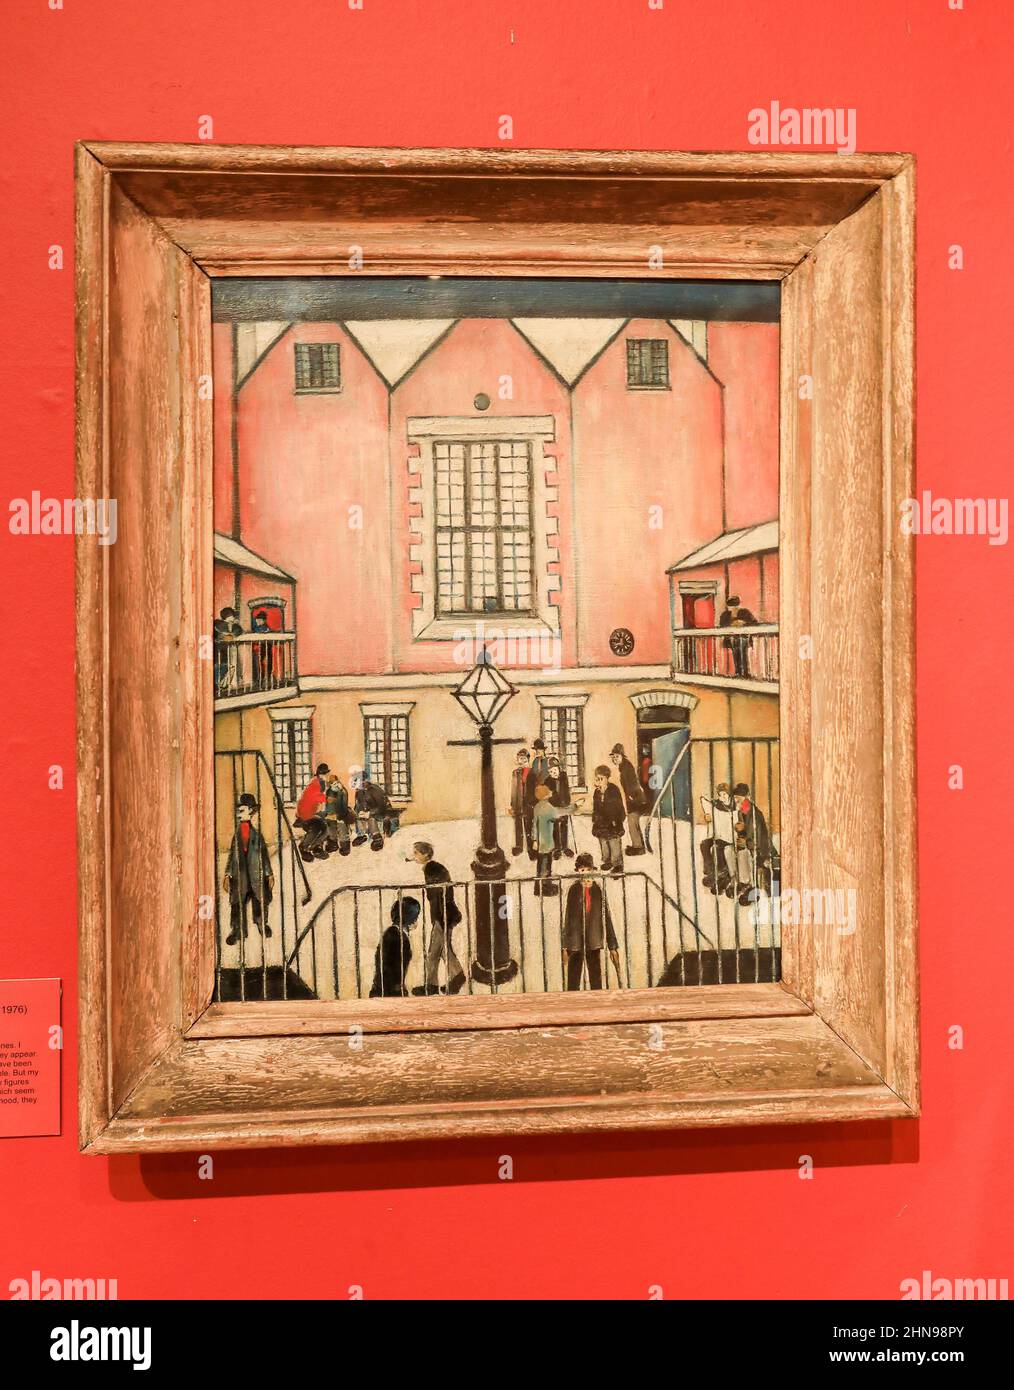 Una foto llamada 'The Courtyard' por L. S. Lowry en el Museo de las Cercanías y Galería de Arte, Hanley, Stoke-on-Trent, Staffs, England, REINO UNIDO Foto de stock